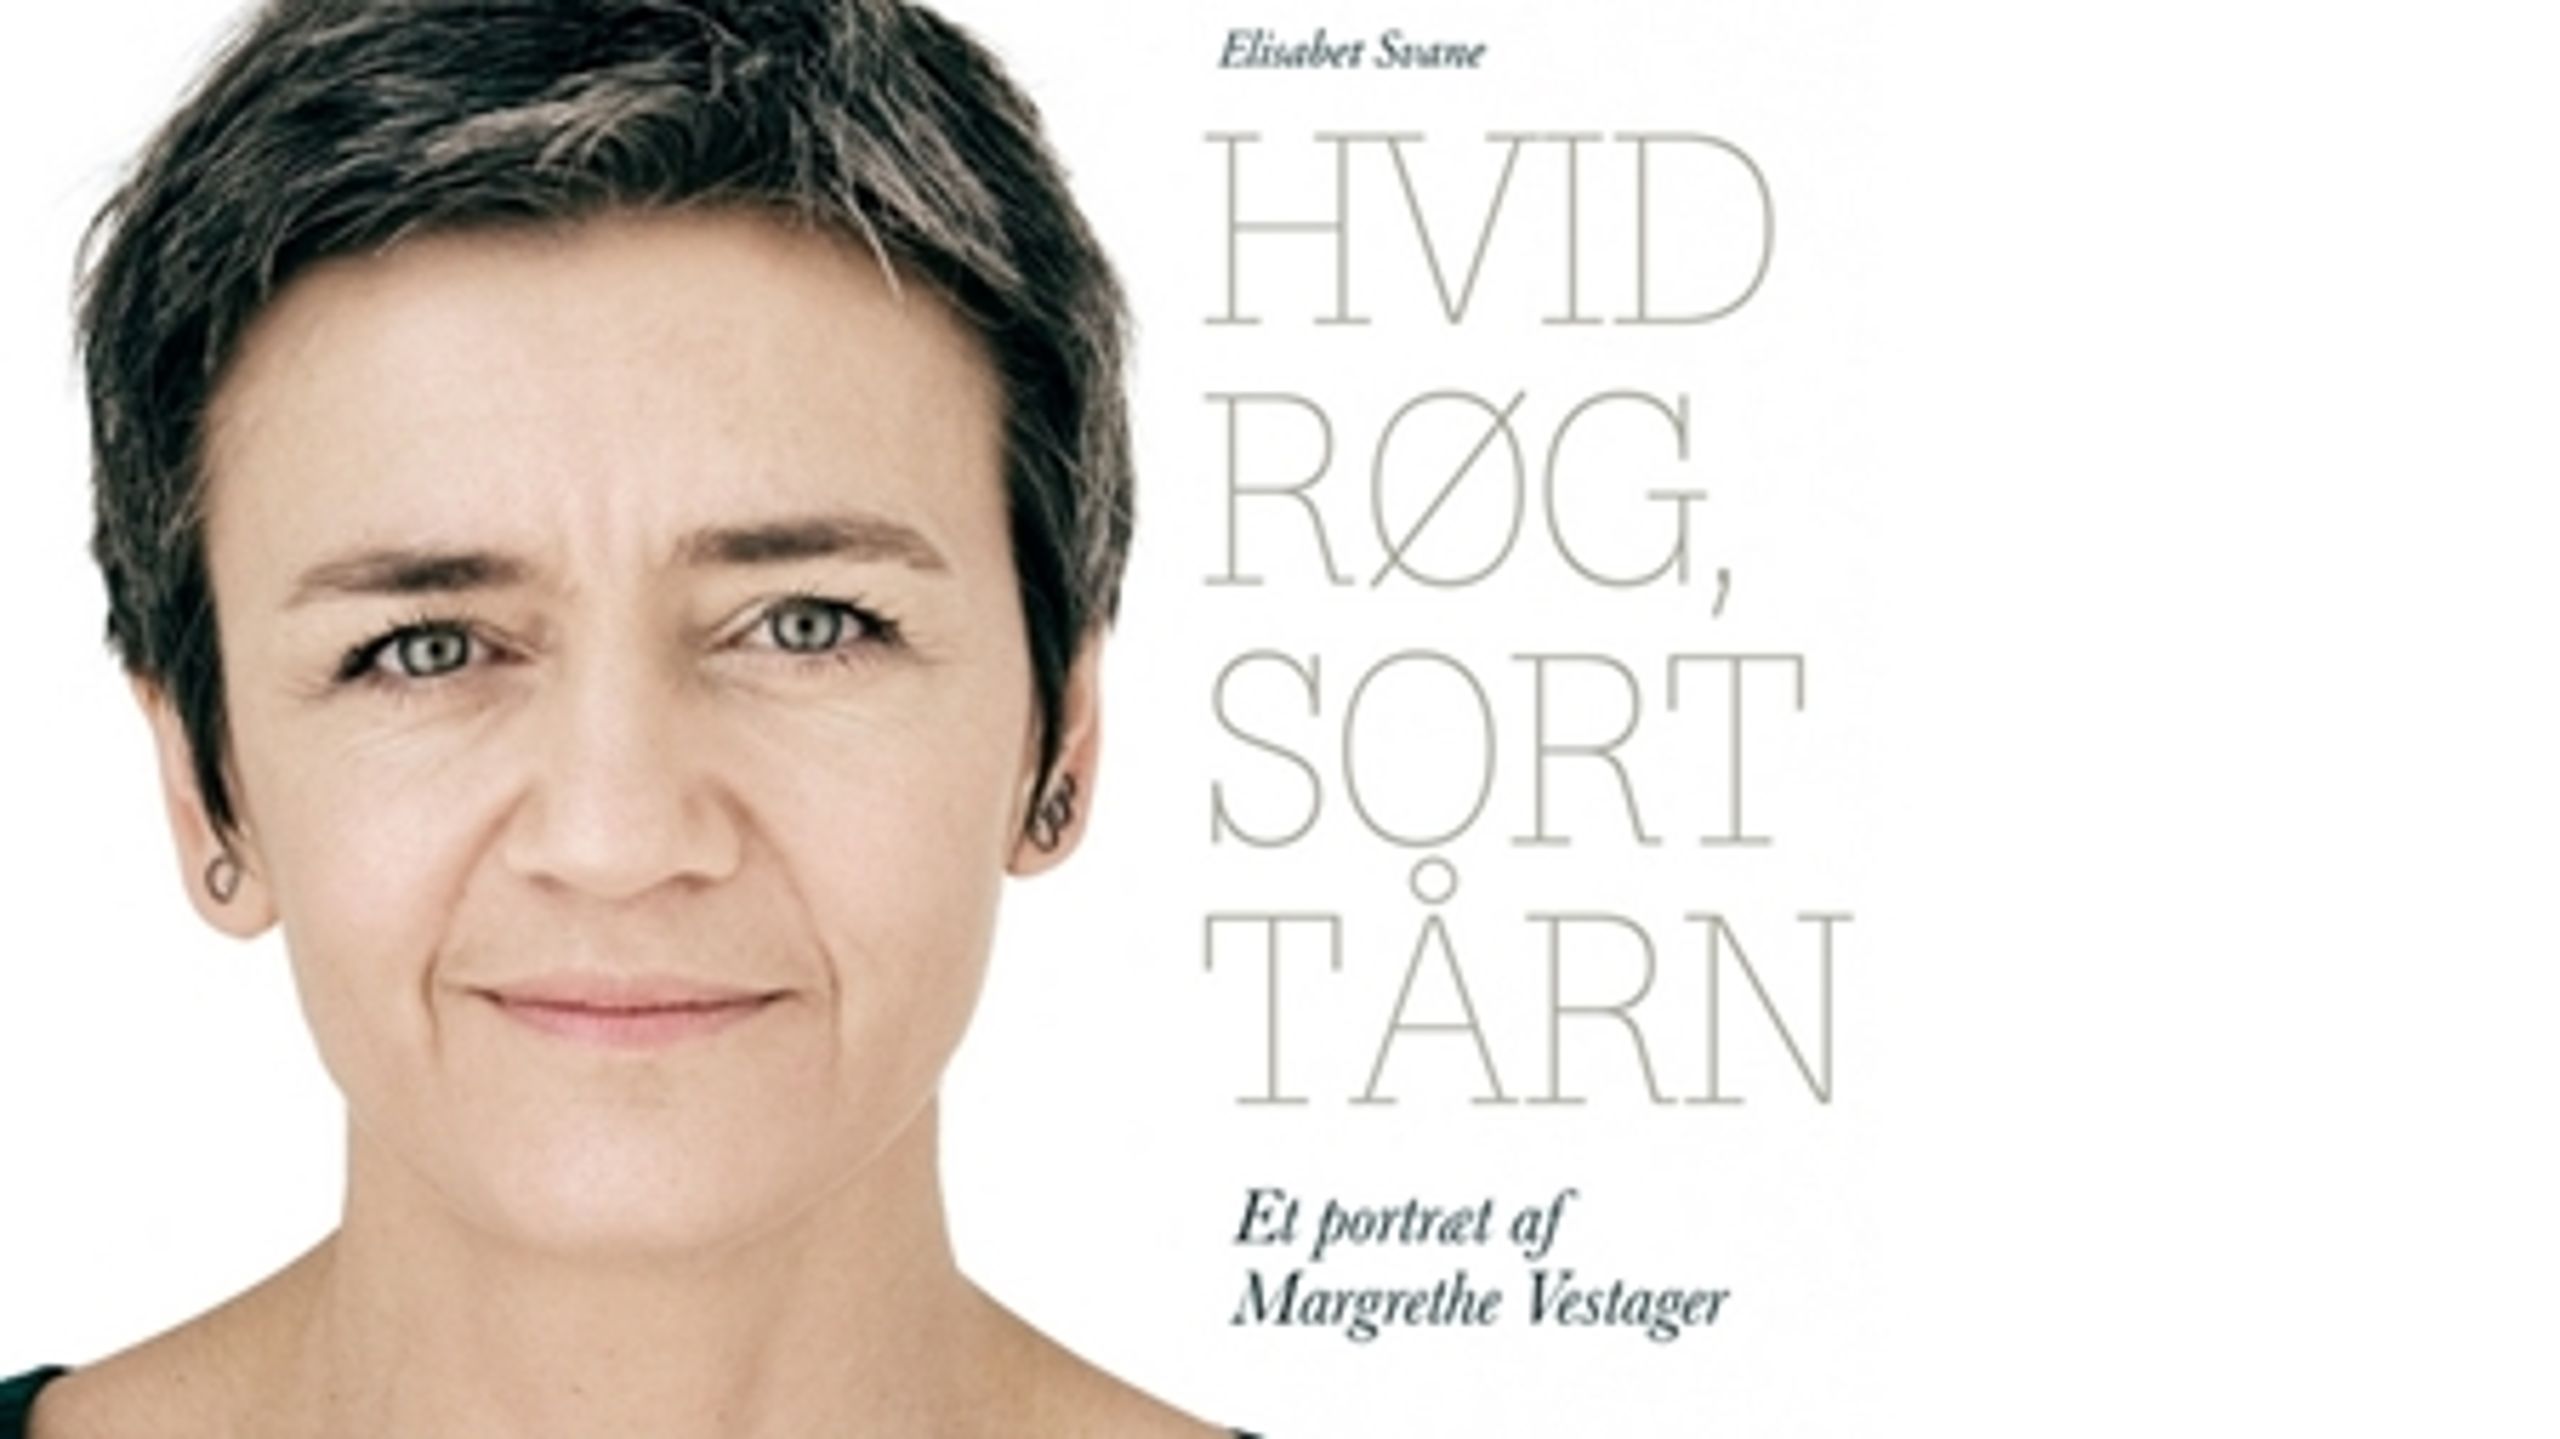 Økonomiminister Margrethe Vestager (R) er en landets allerstærkeste politikere. Men næste gang hun vil have produceret en ukritisk portrætbog, bør hun overveje at skrive den selv.